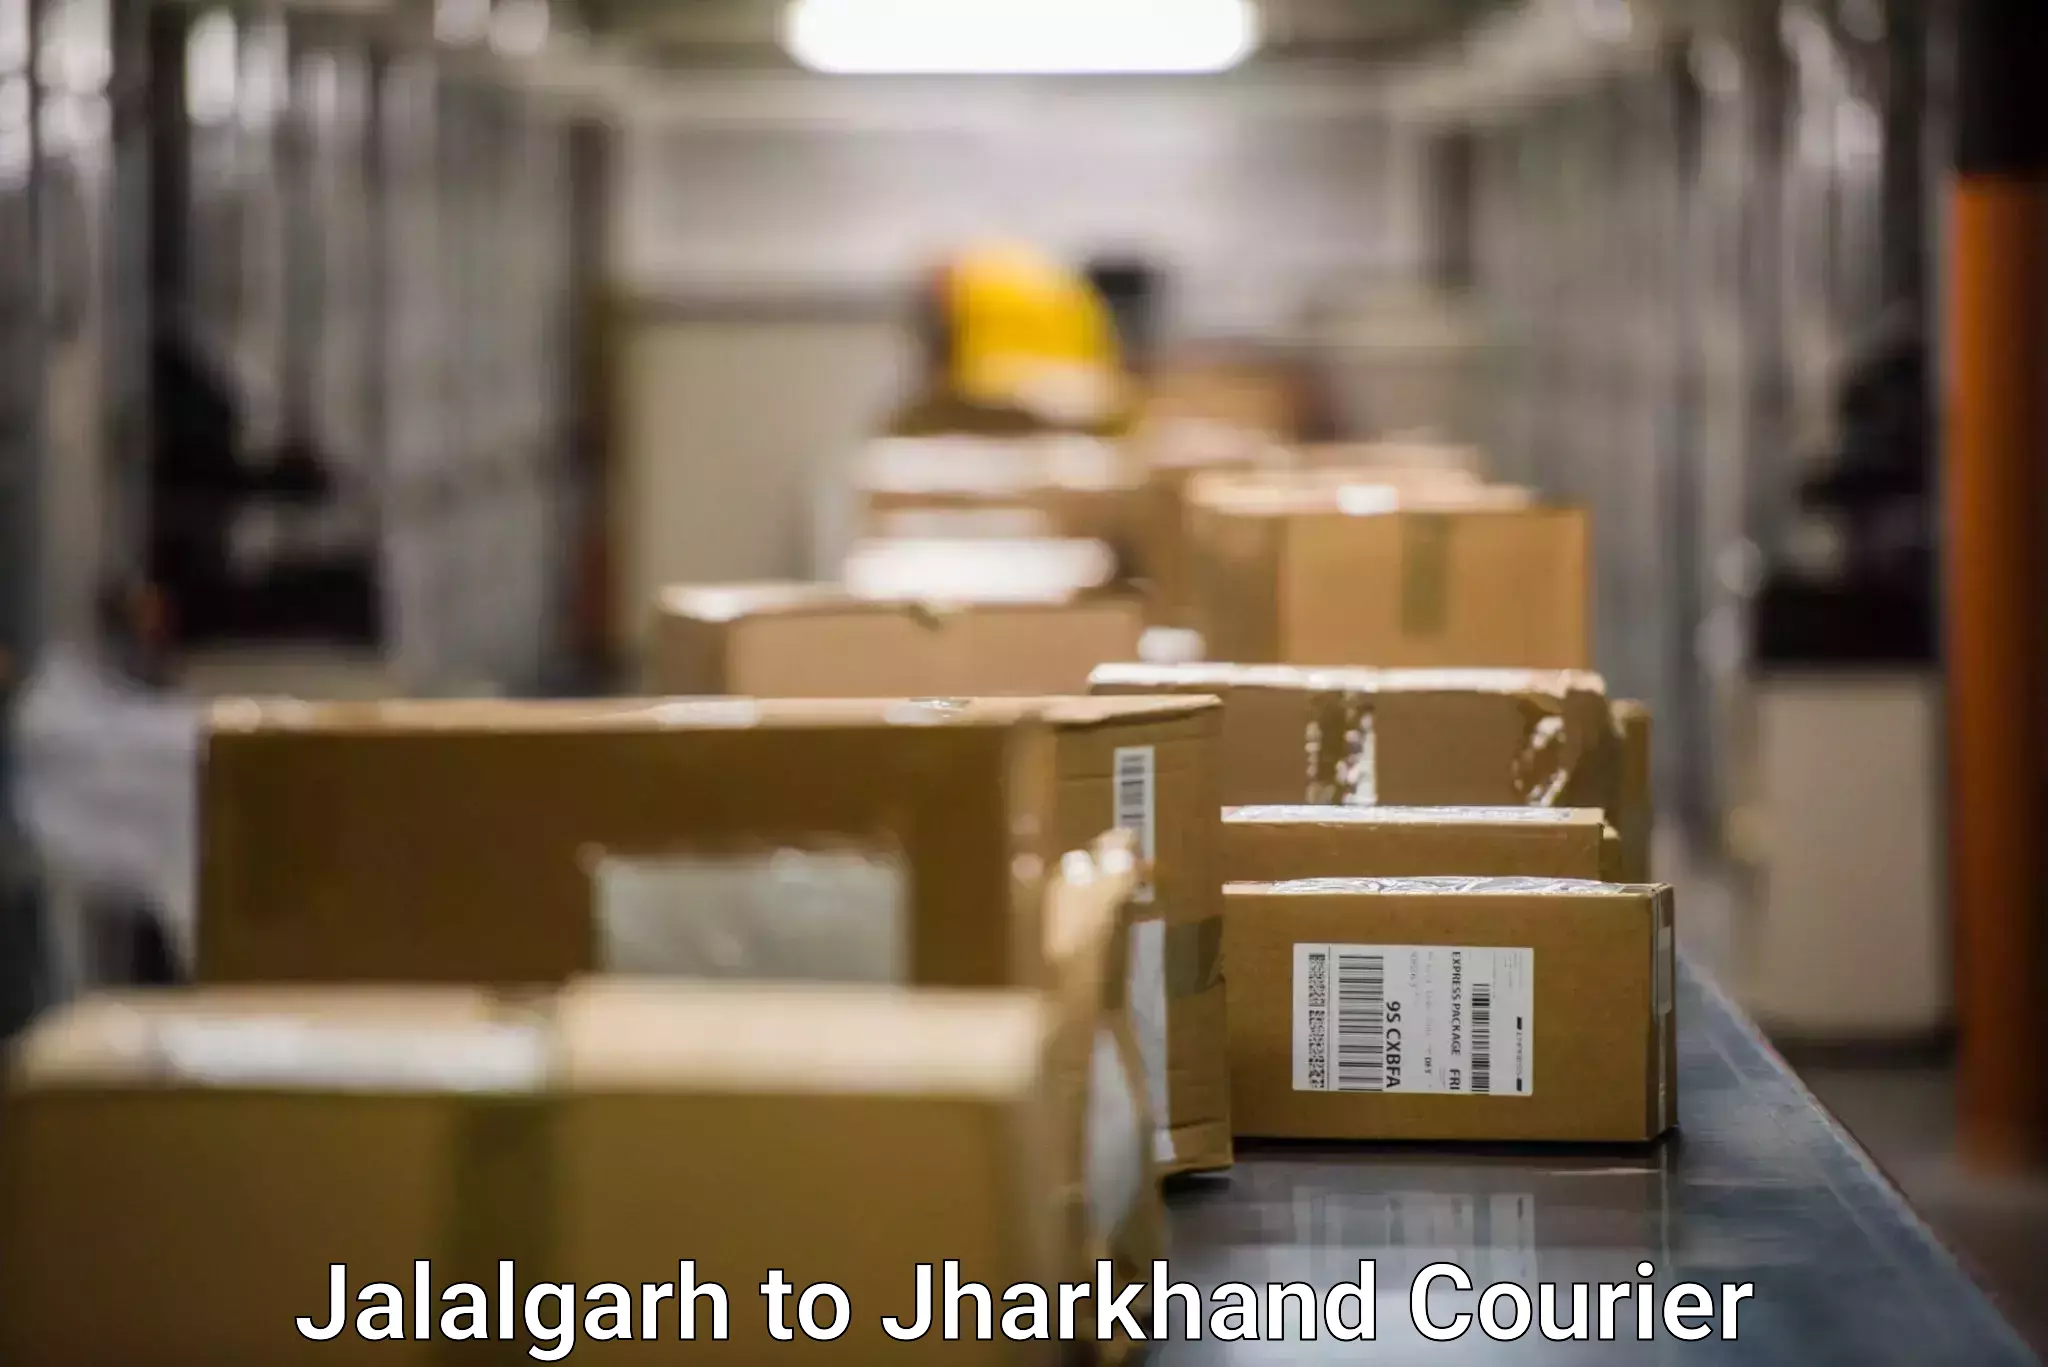 Comprehensive parcel tracking Jalalgarh to Deoghar